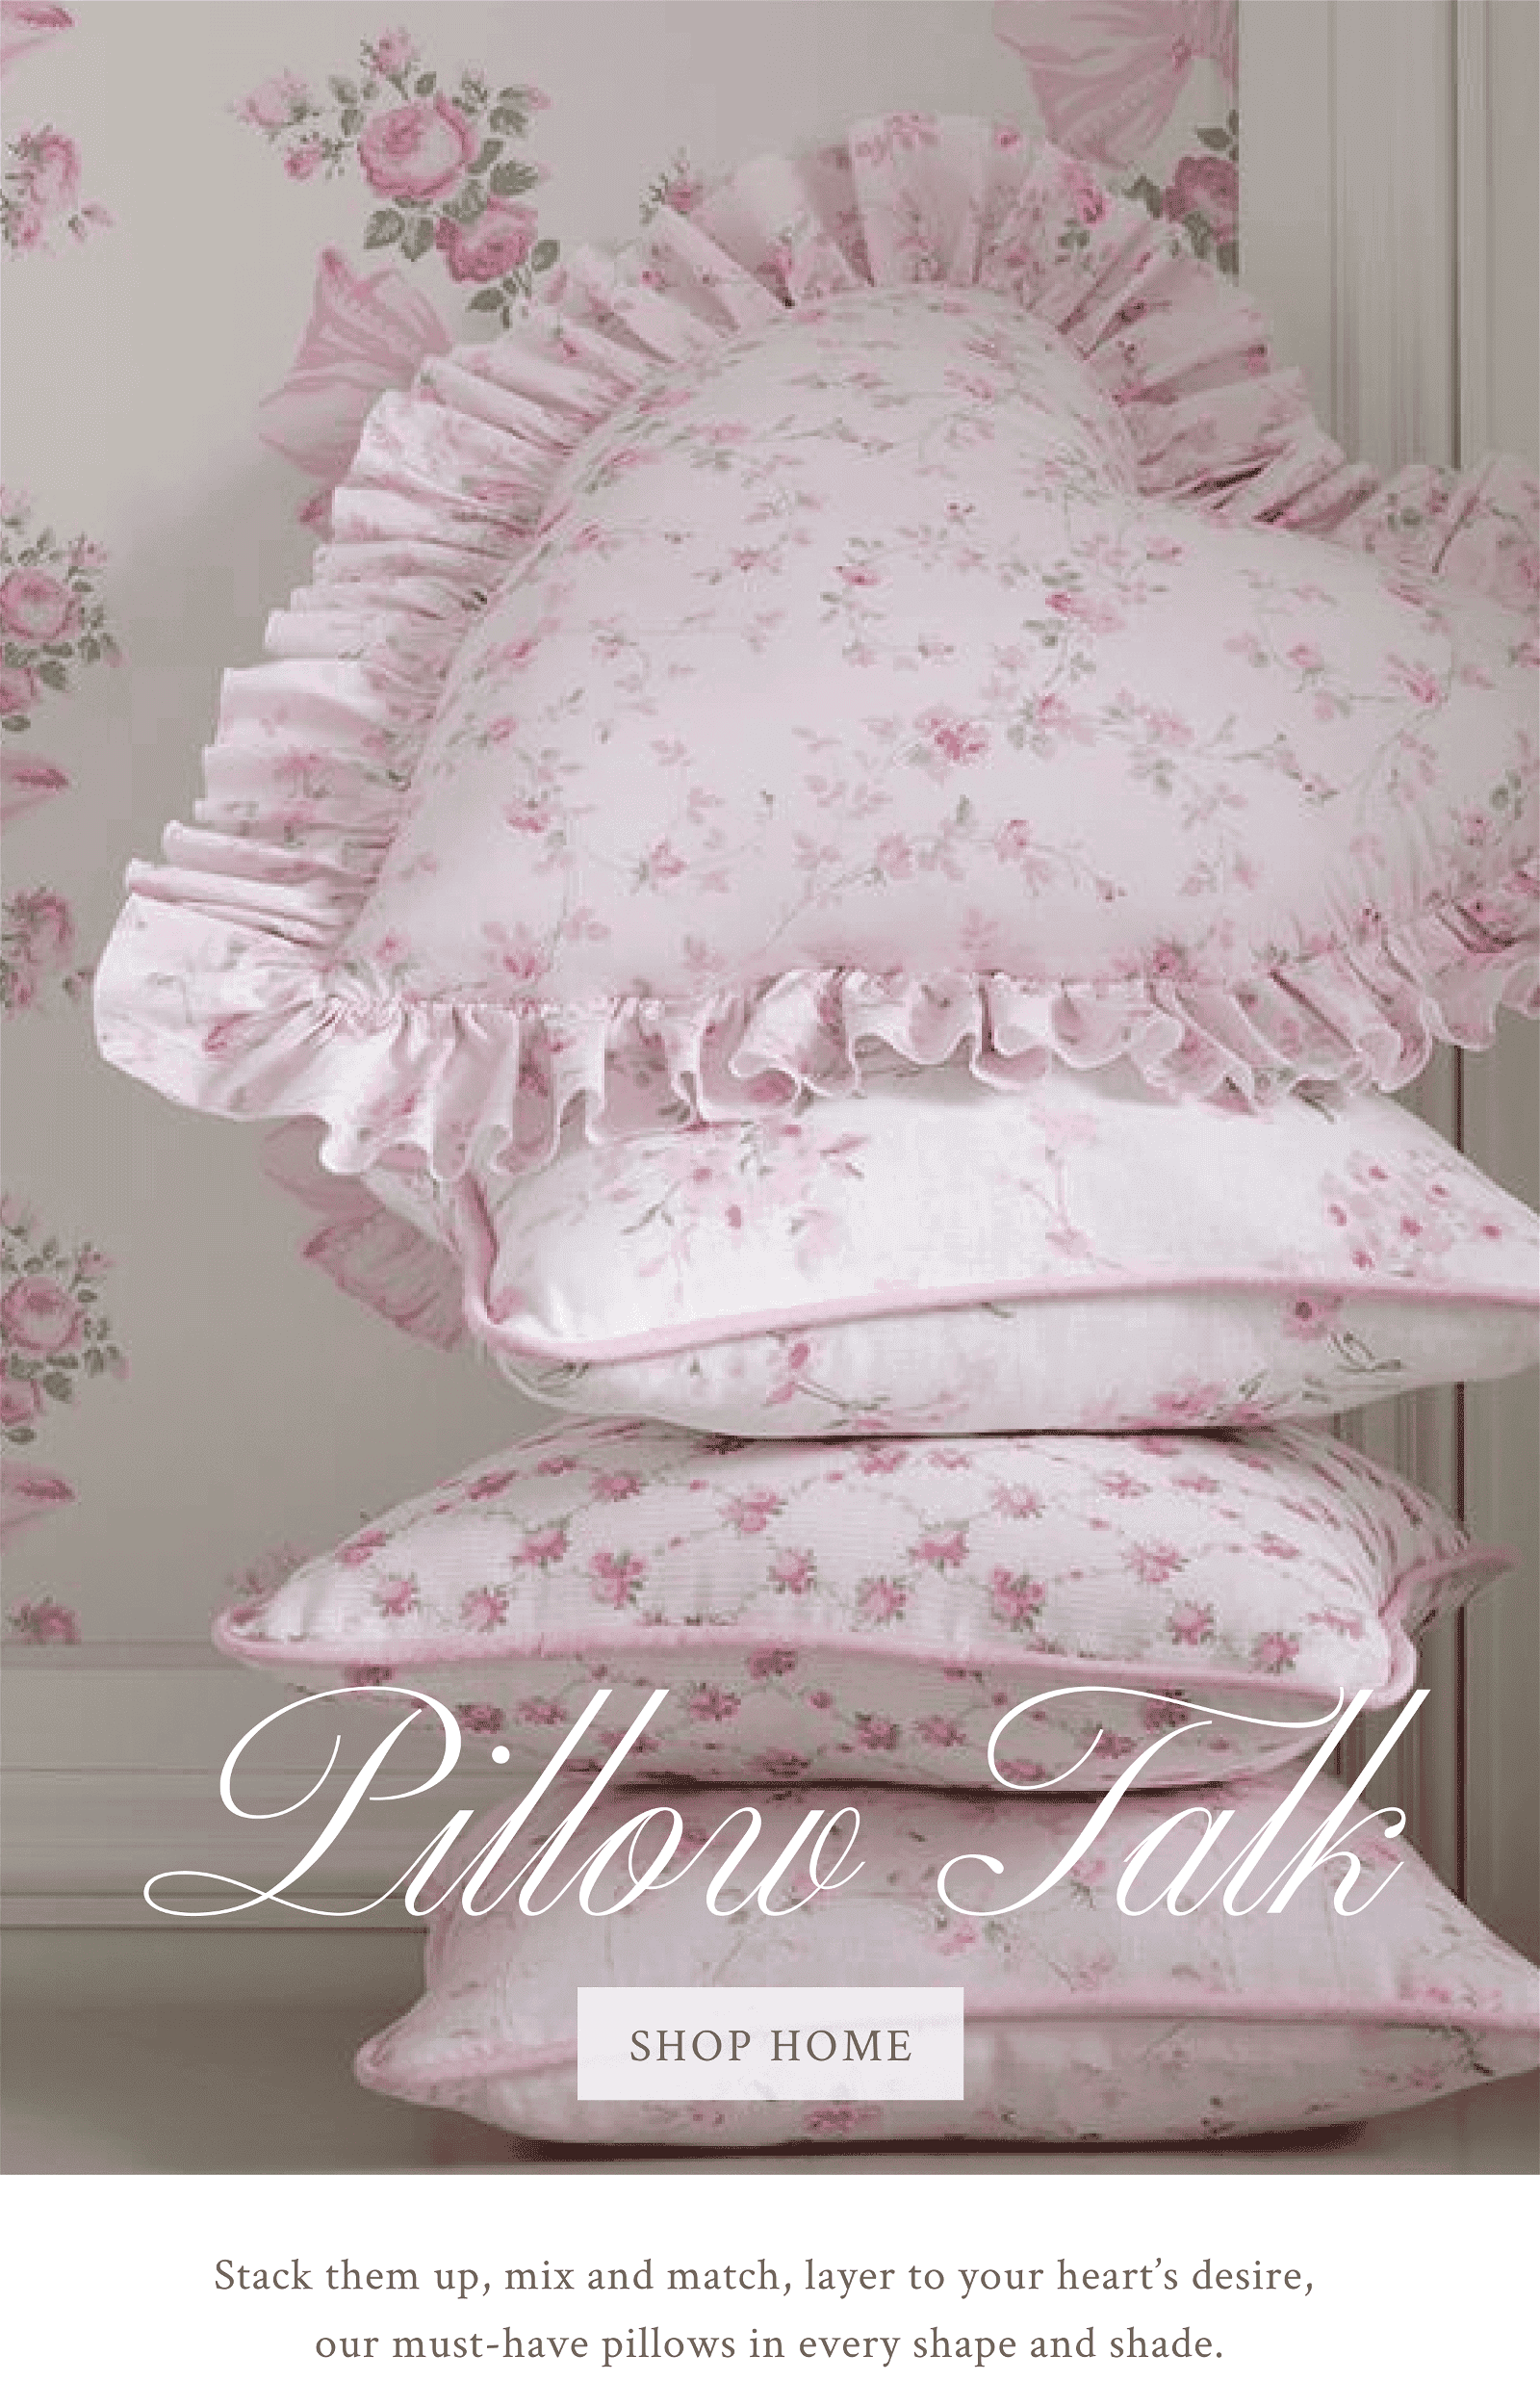 Pillow talk. Shop home